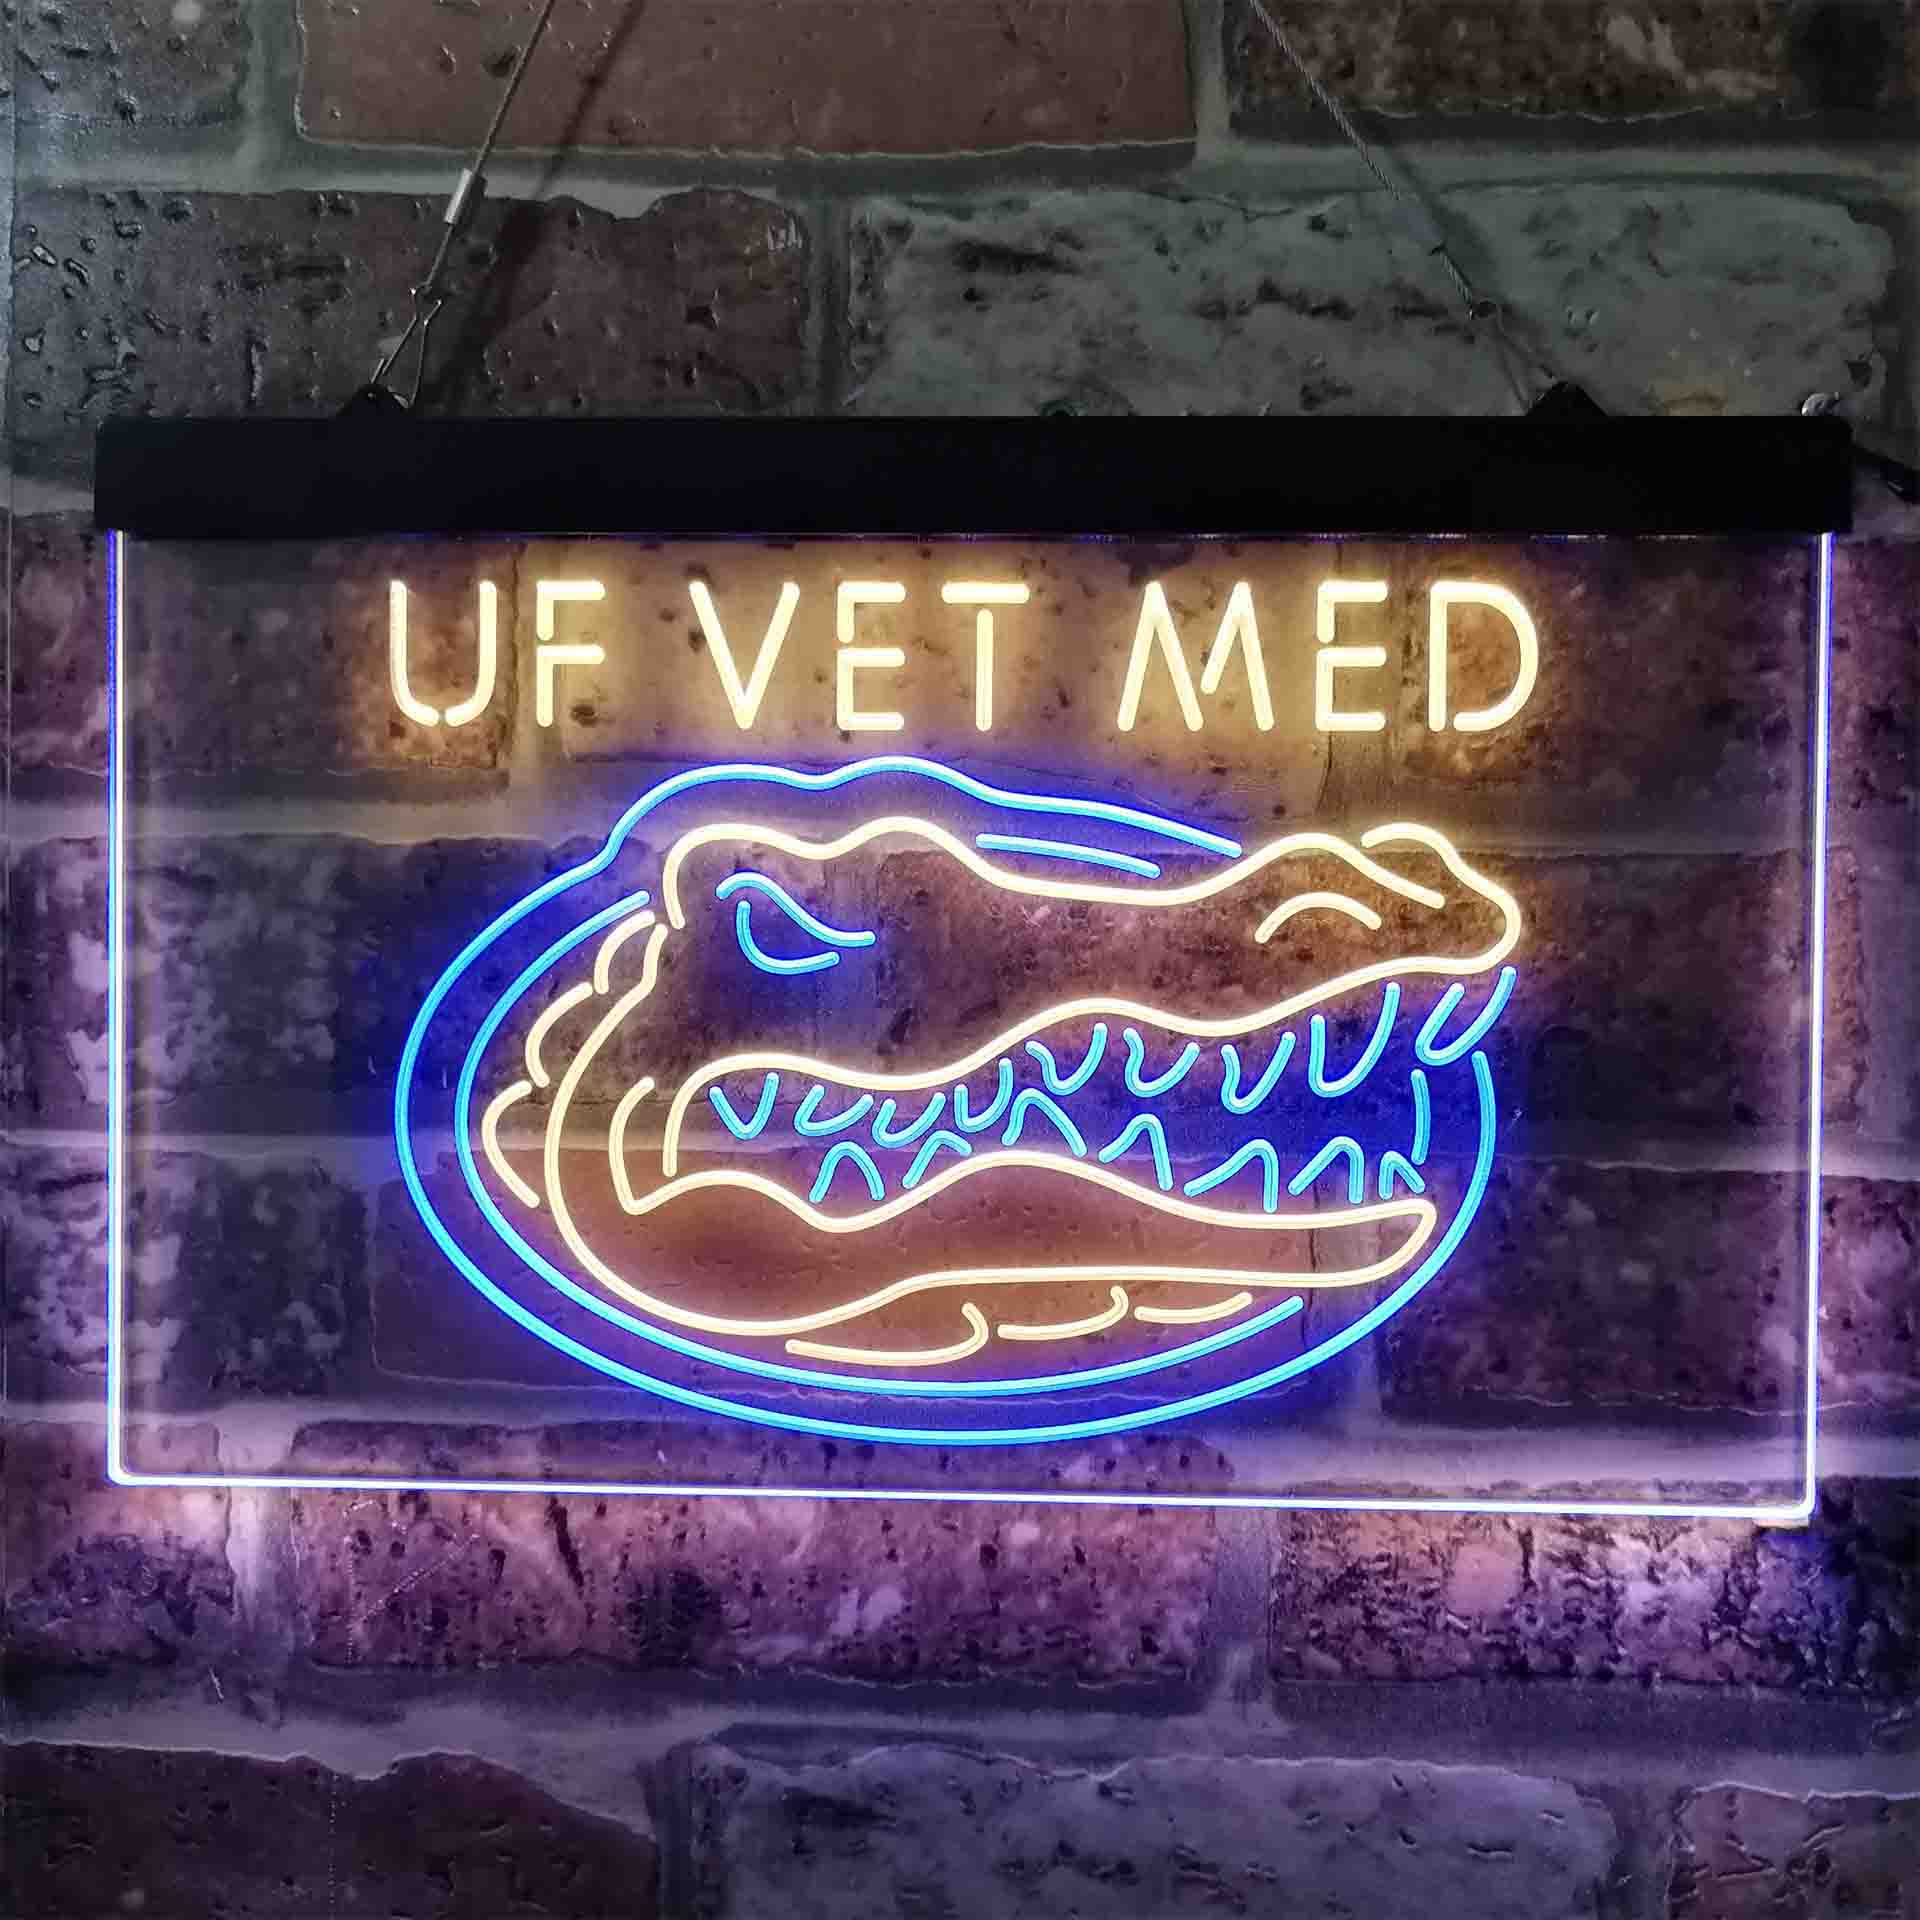 Florida Gators NCAA College VET MED Neon-Like LED Sign - ProLedSign